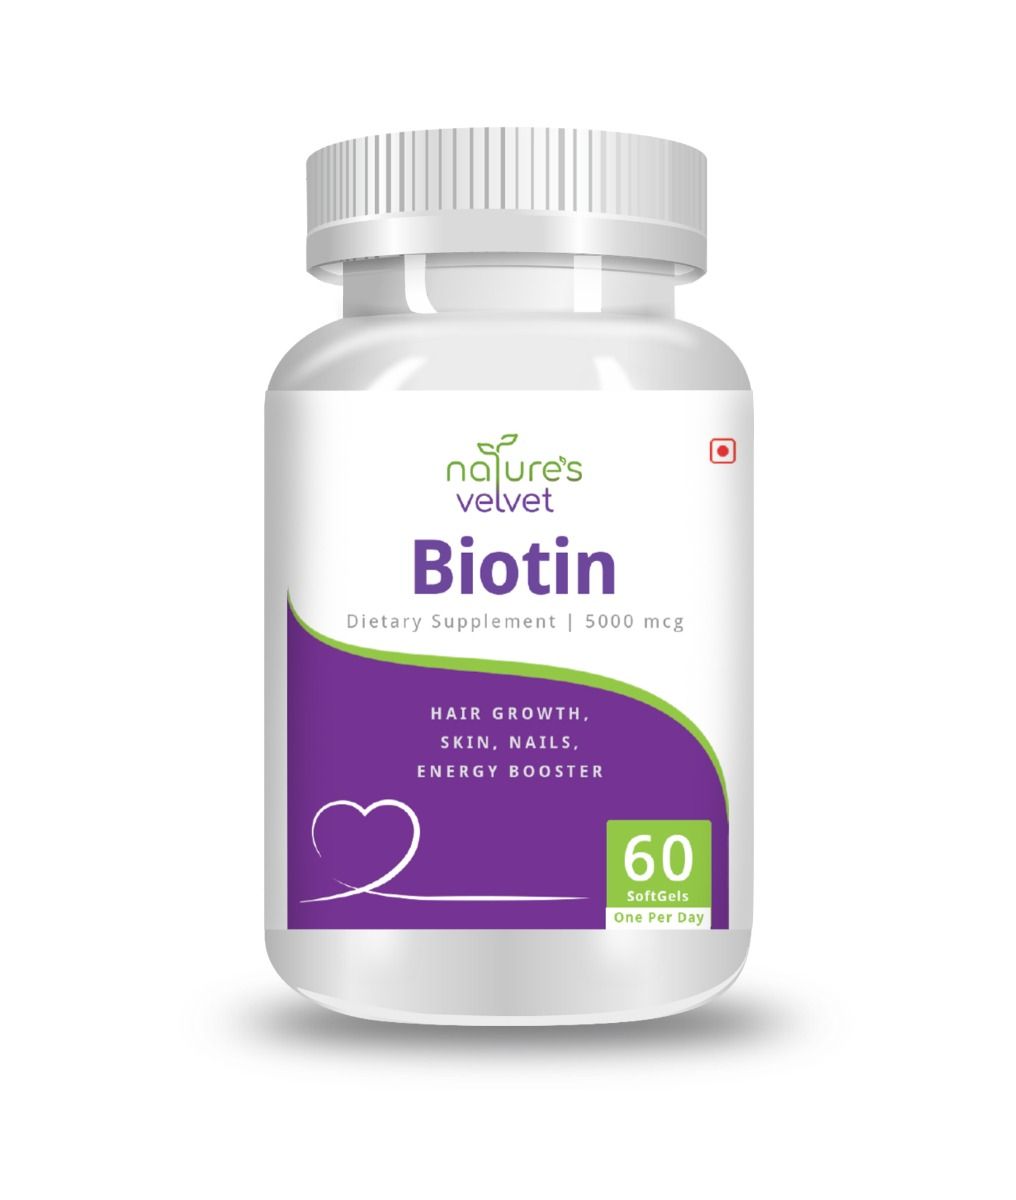 Nature's Velvet Biotin Dietary Supplement 5000 mcg, 60 Softgels, Pack of 1 